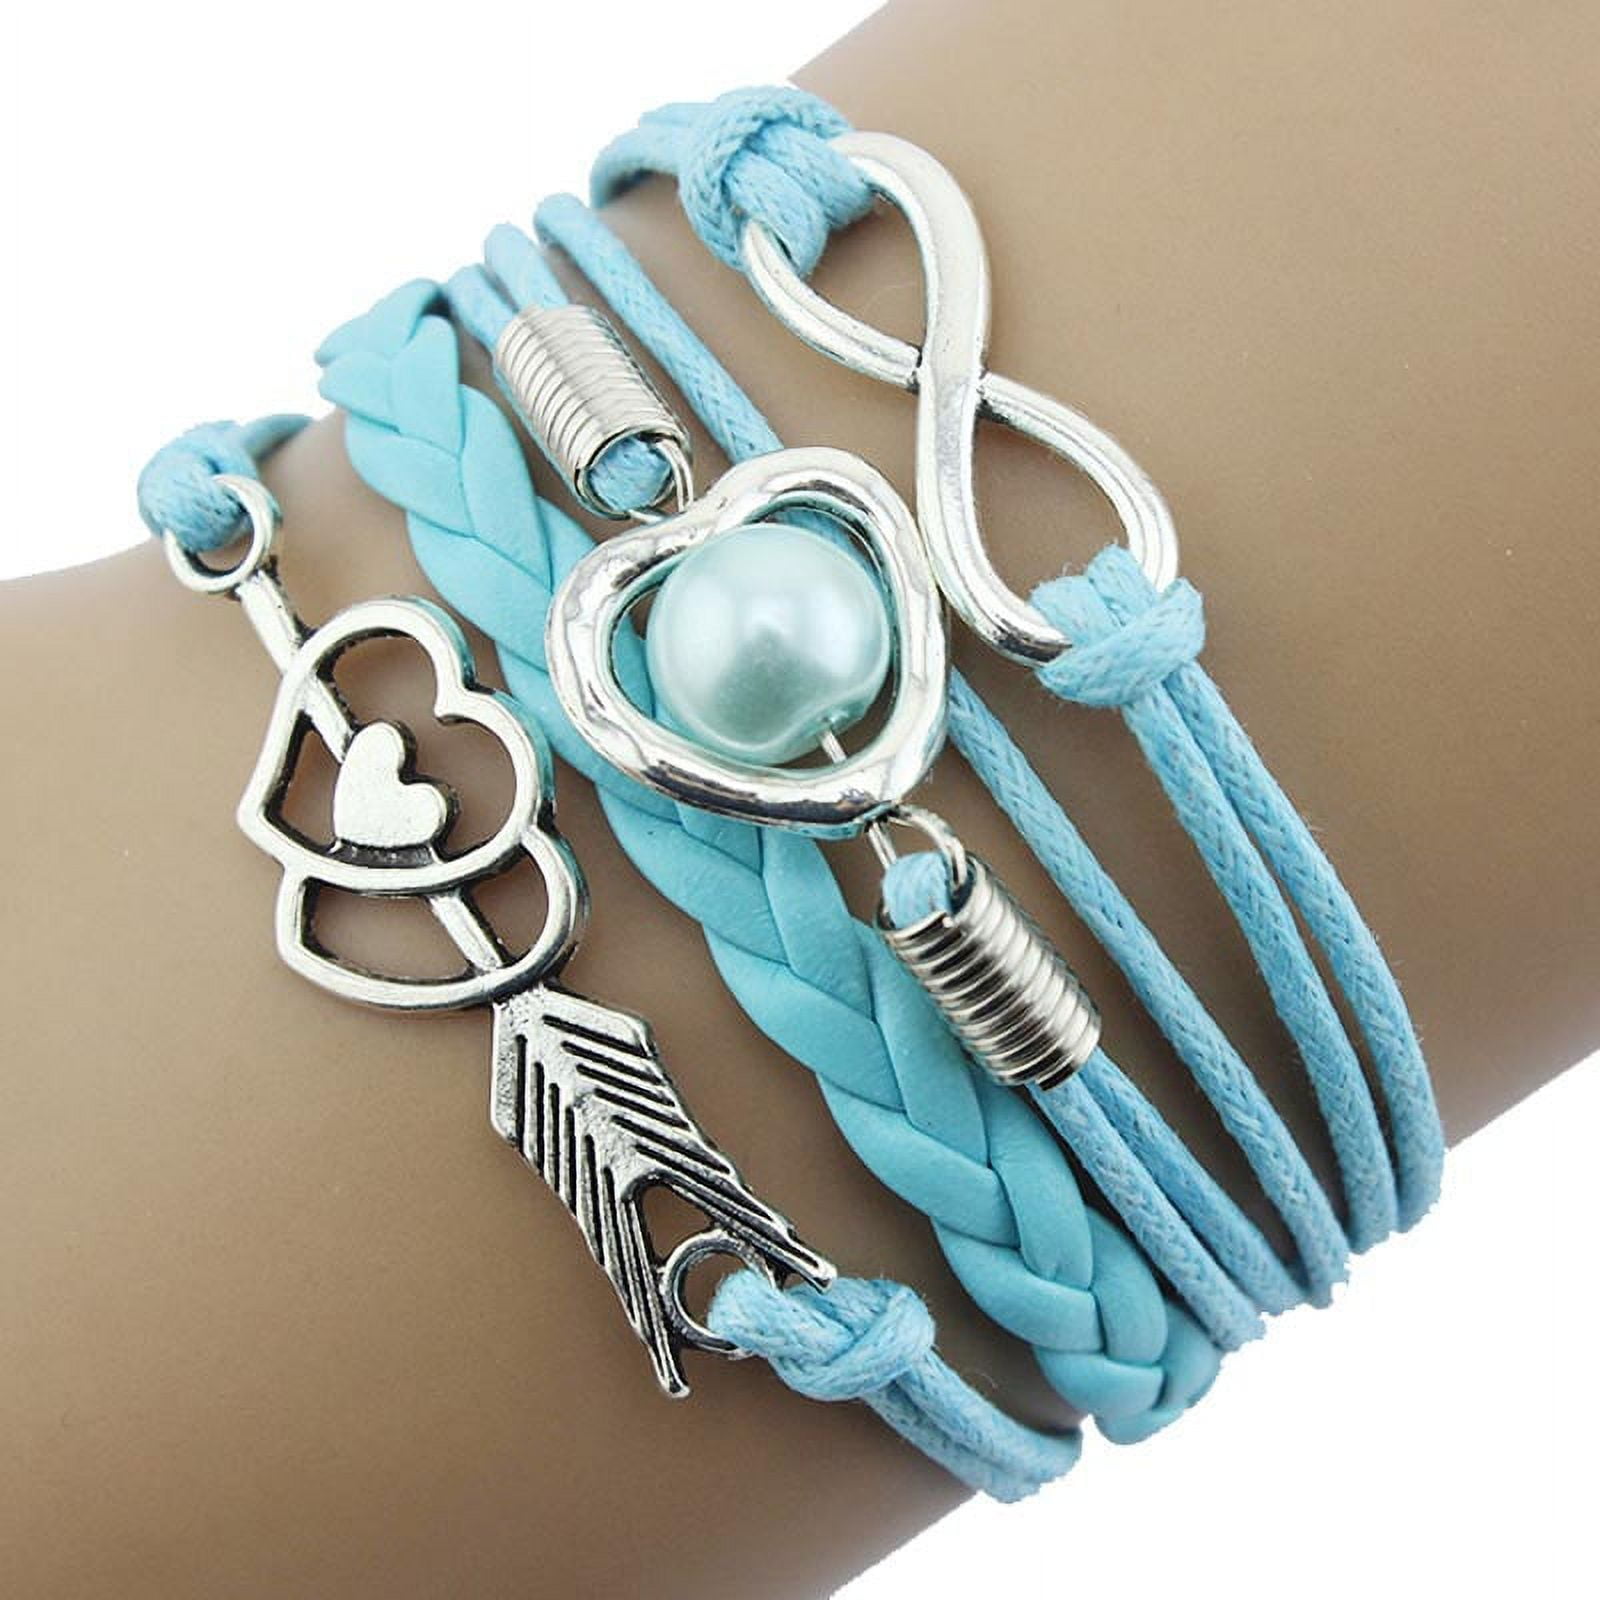 Bracelets for Women & Girl, Friendship Leather Bracelets Gift, Handmade  Love Jewelry for Teen Girl (Blue) - Walmart.com